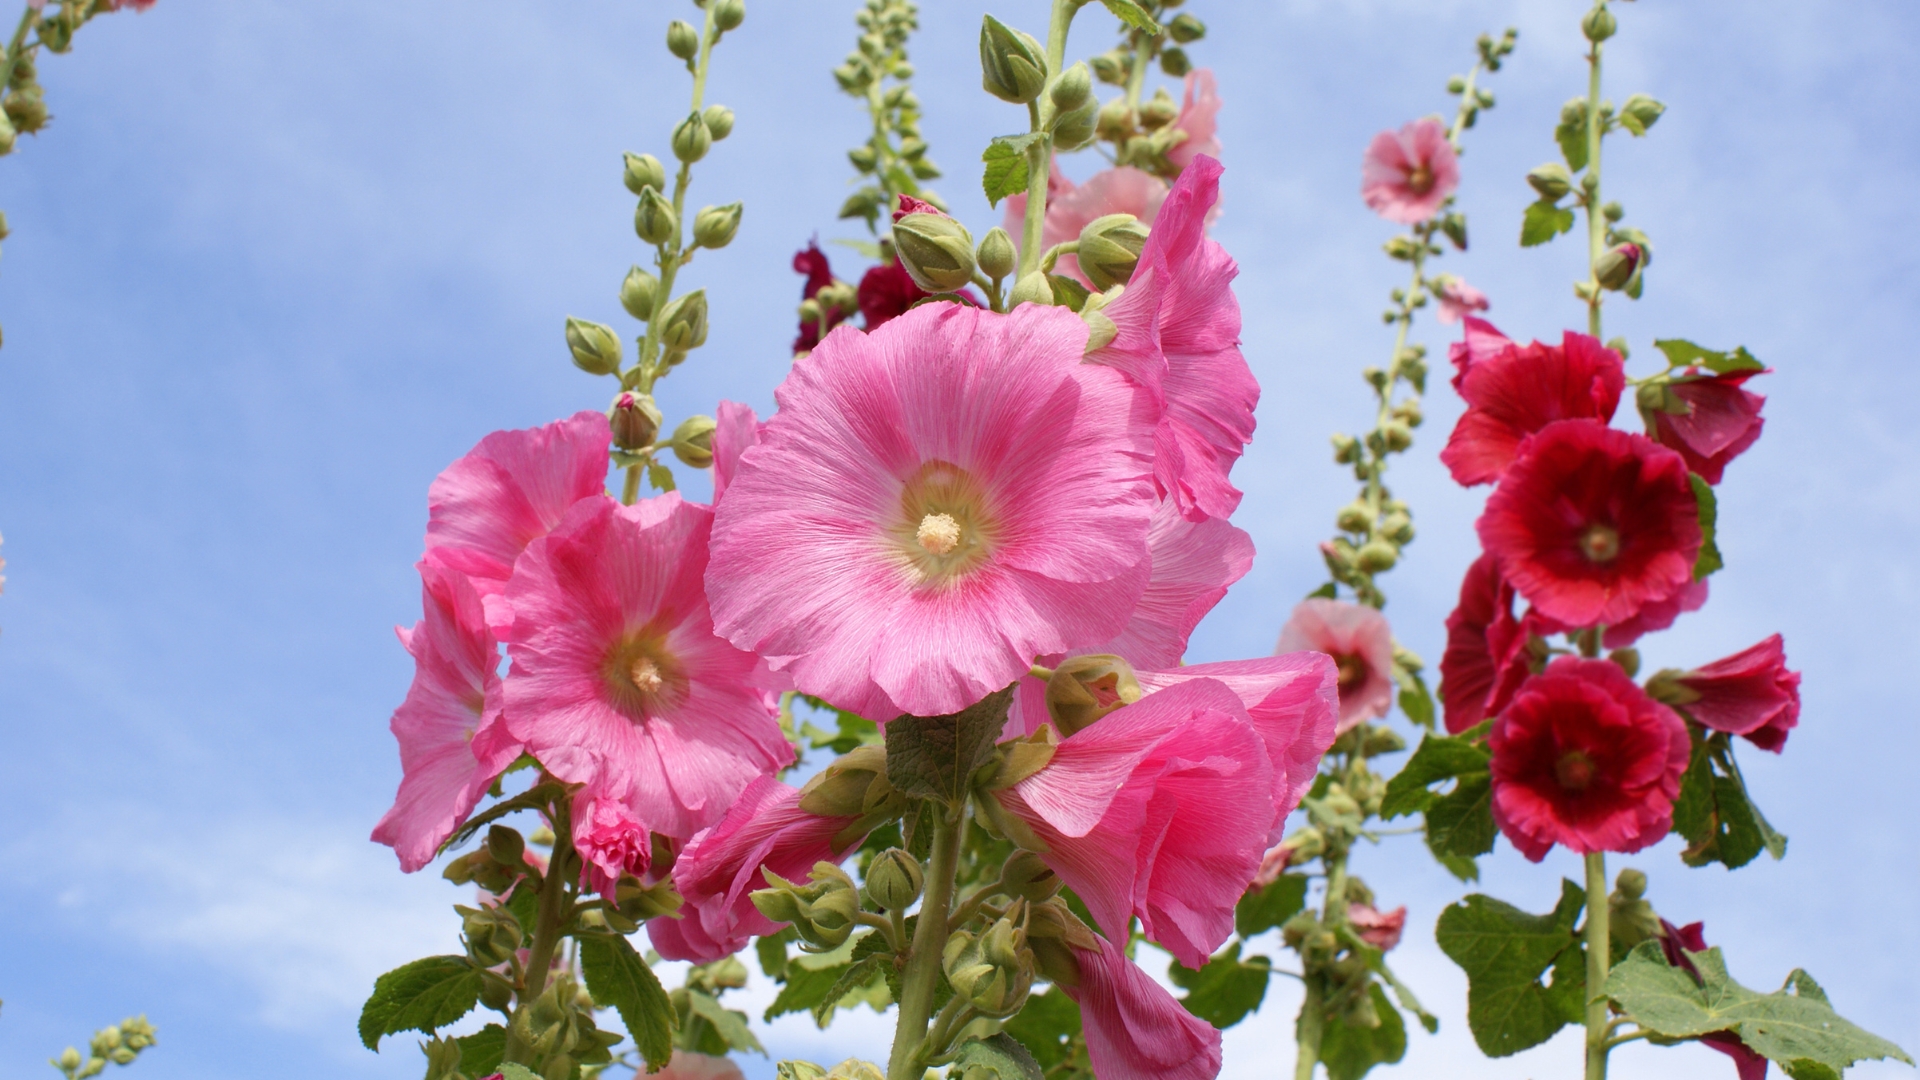 pink flowers of hollyhocks